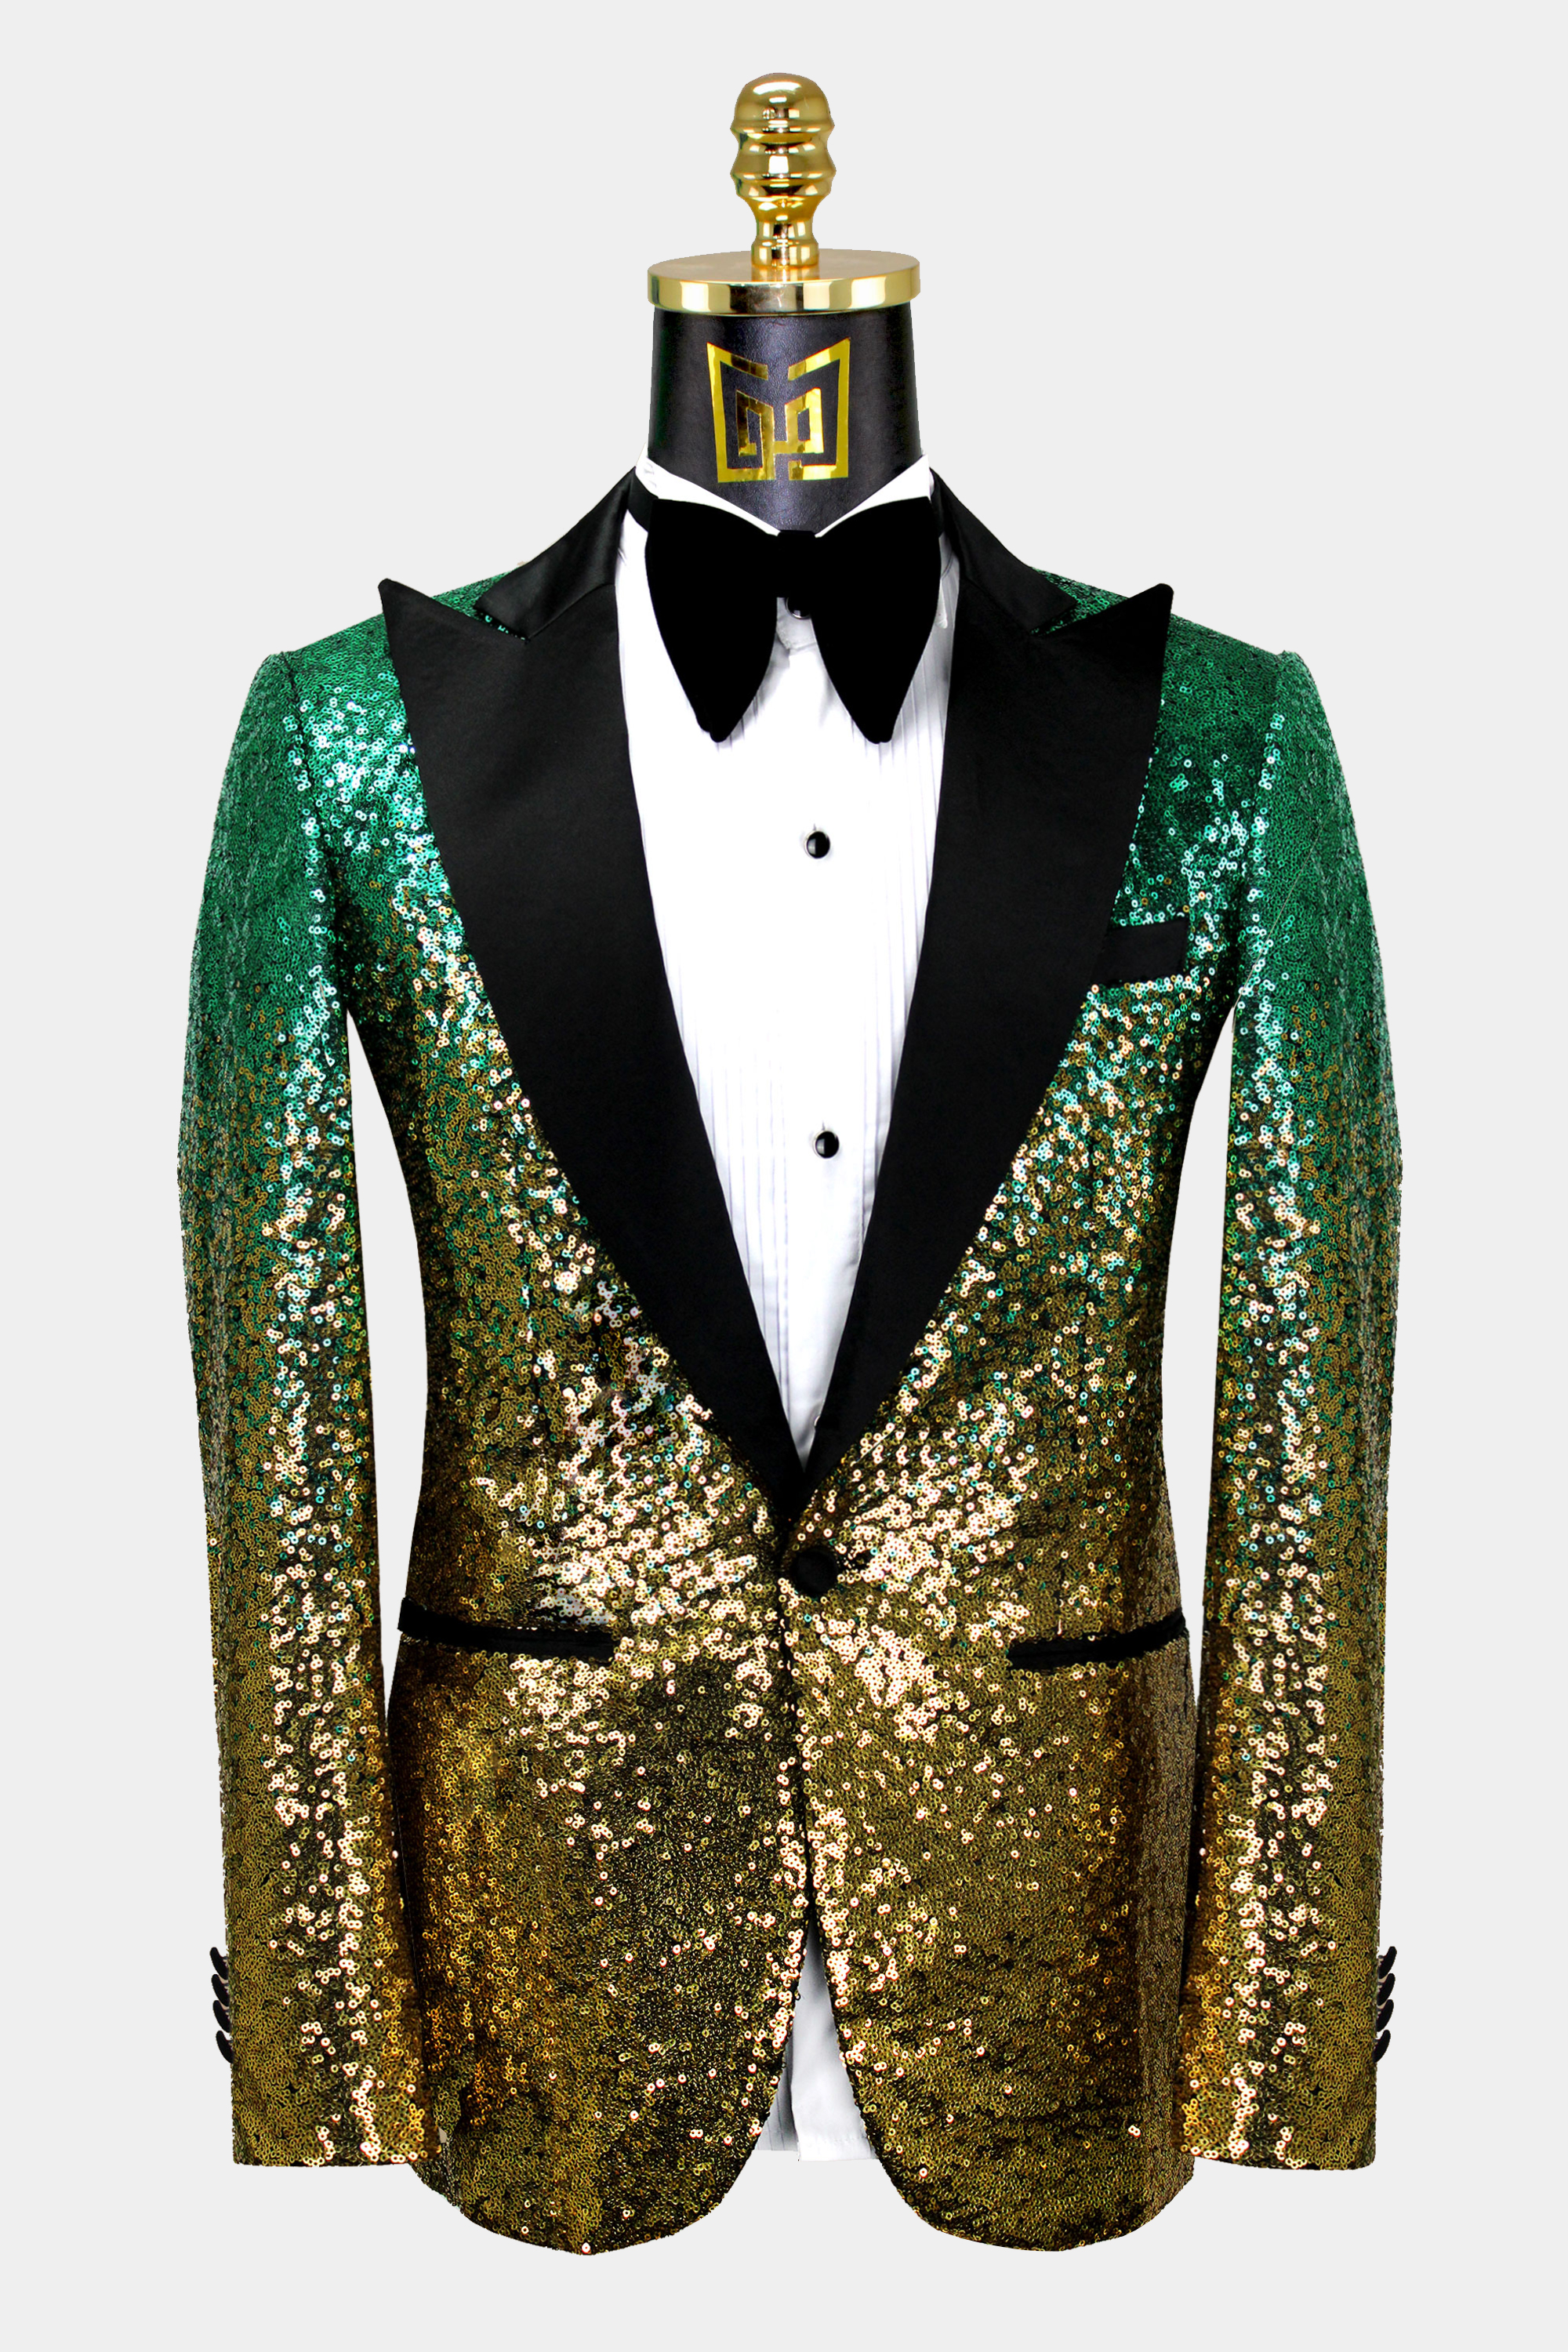 Mens-Green-and-Gold-Tuxedo-Jacket-Wedding-Groom-Prom-Suit-Blazer-from-Gentlemansguru.com